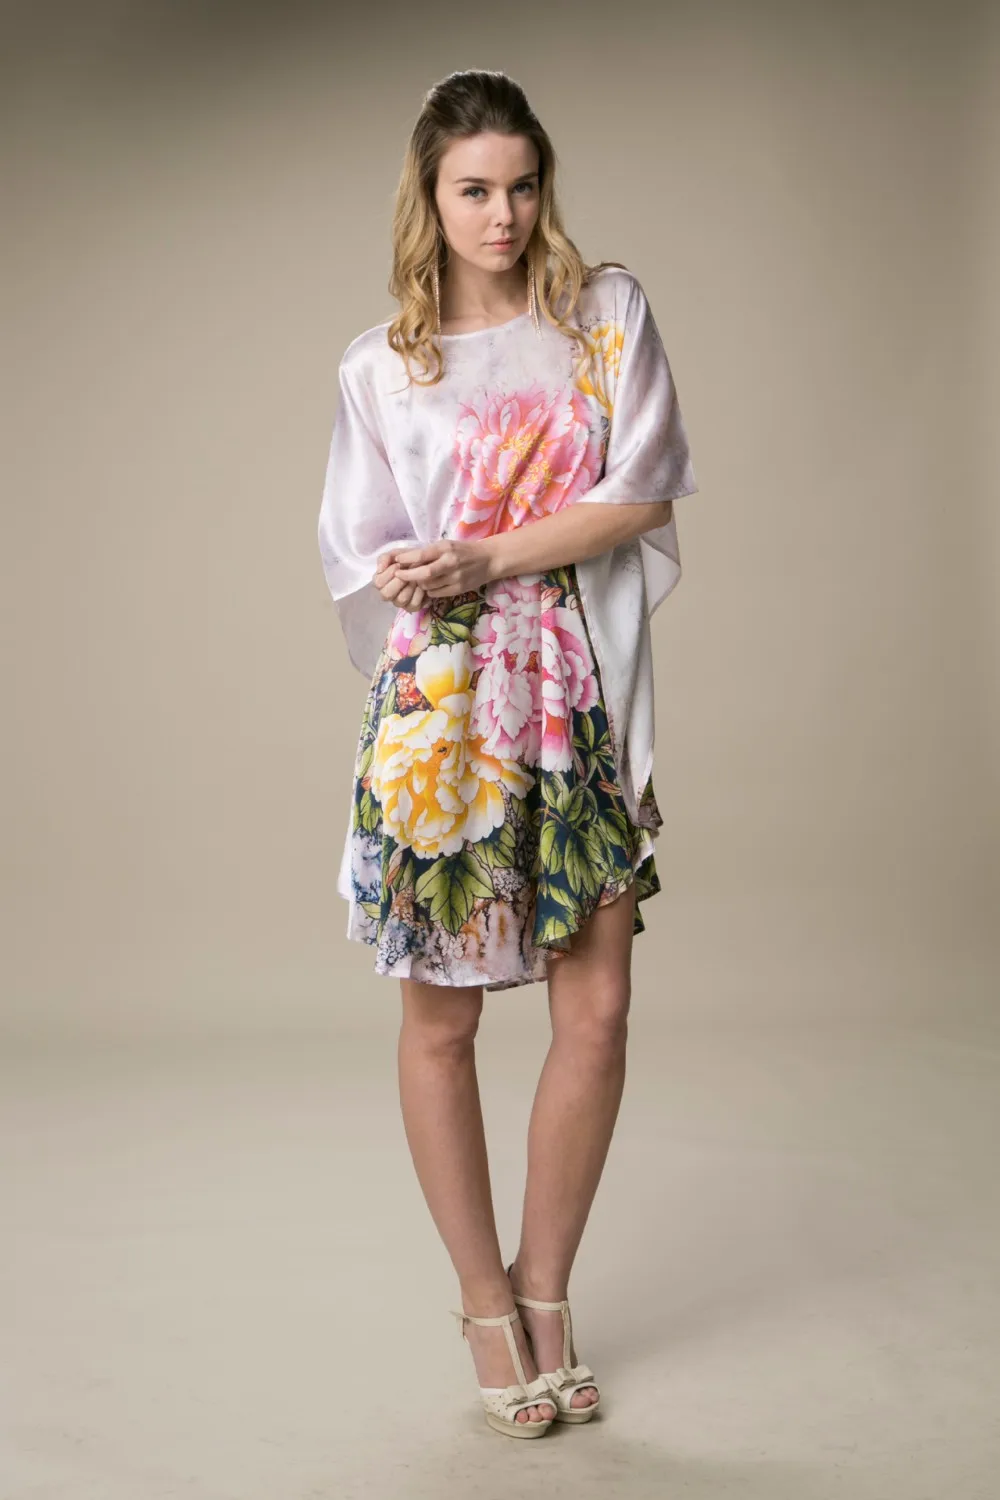 Шелковое атласное платье из натурального шелка с принтом женское платье цветочный дизайн китайский стиль цифровая печать Прямая с фабрики